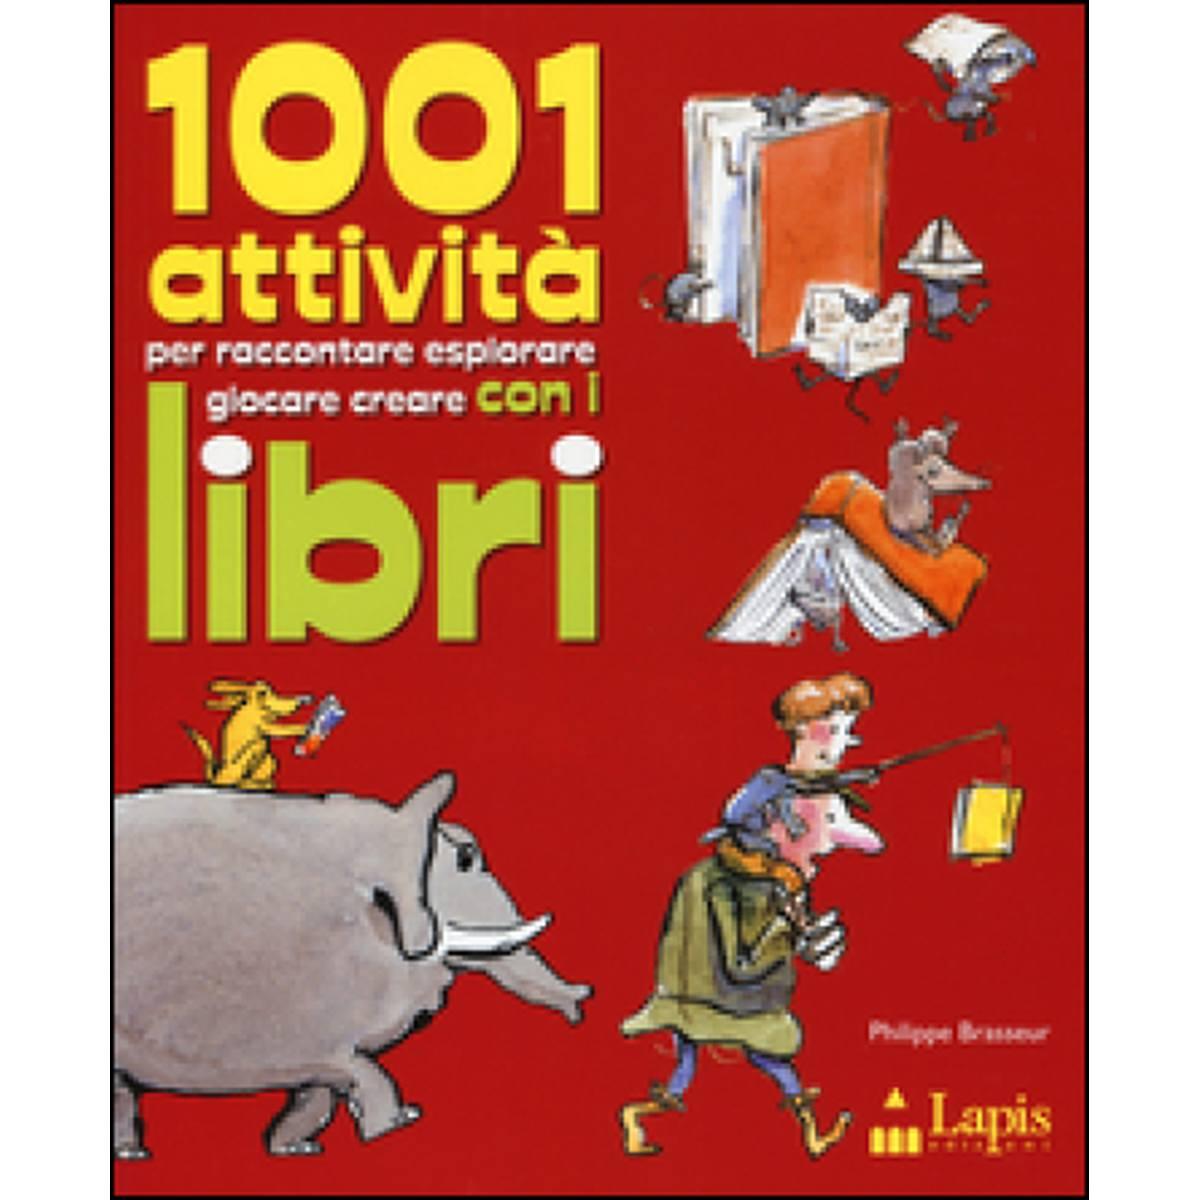 1001 attivita' per raccontare esplorare giocare creare con i libri